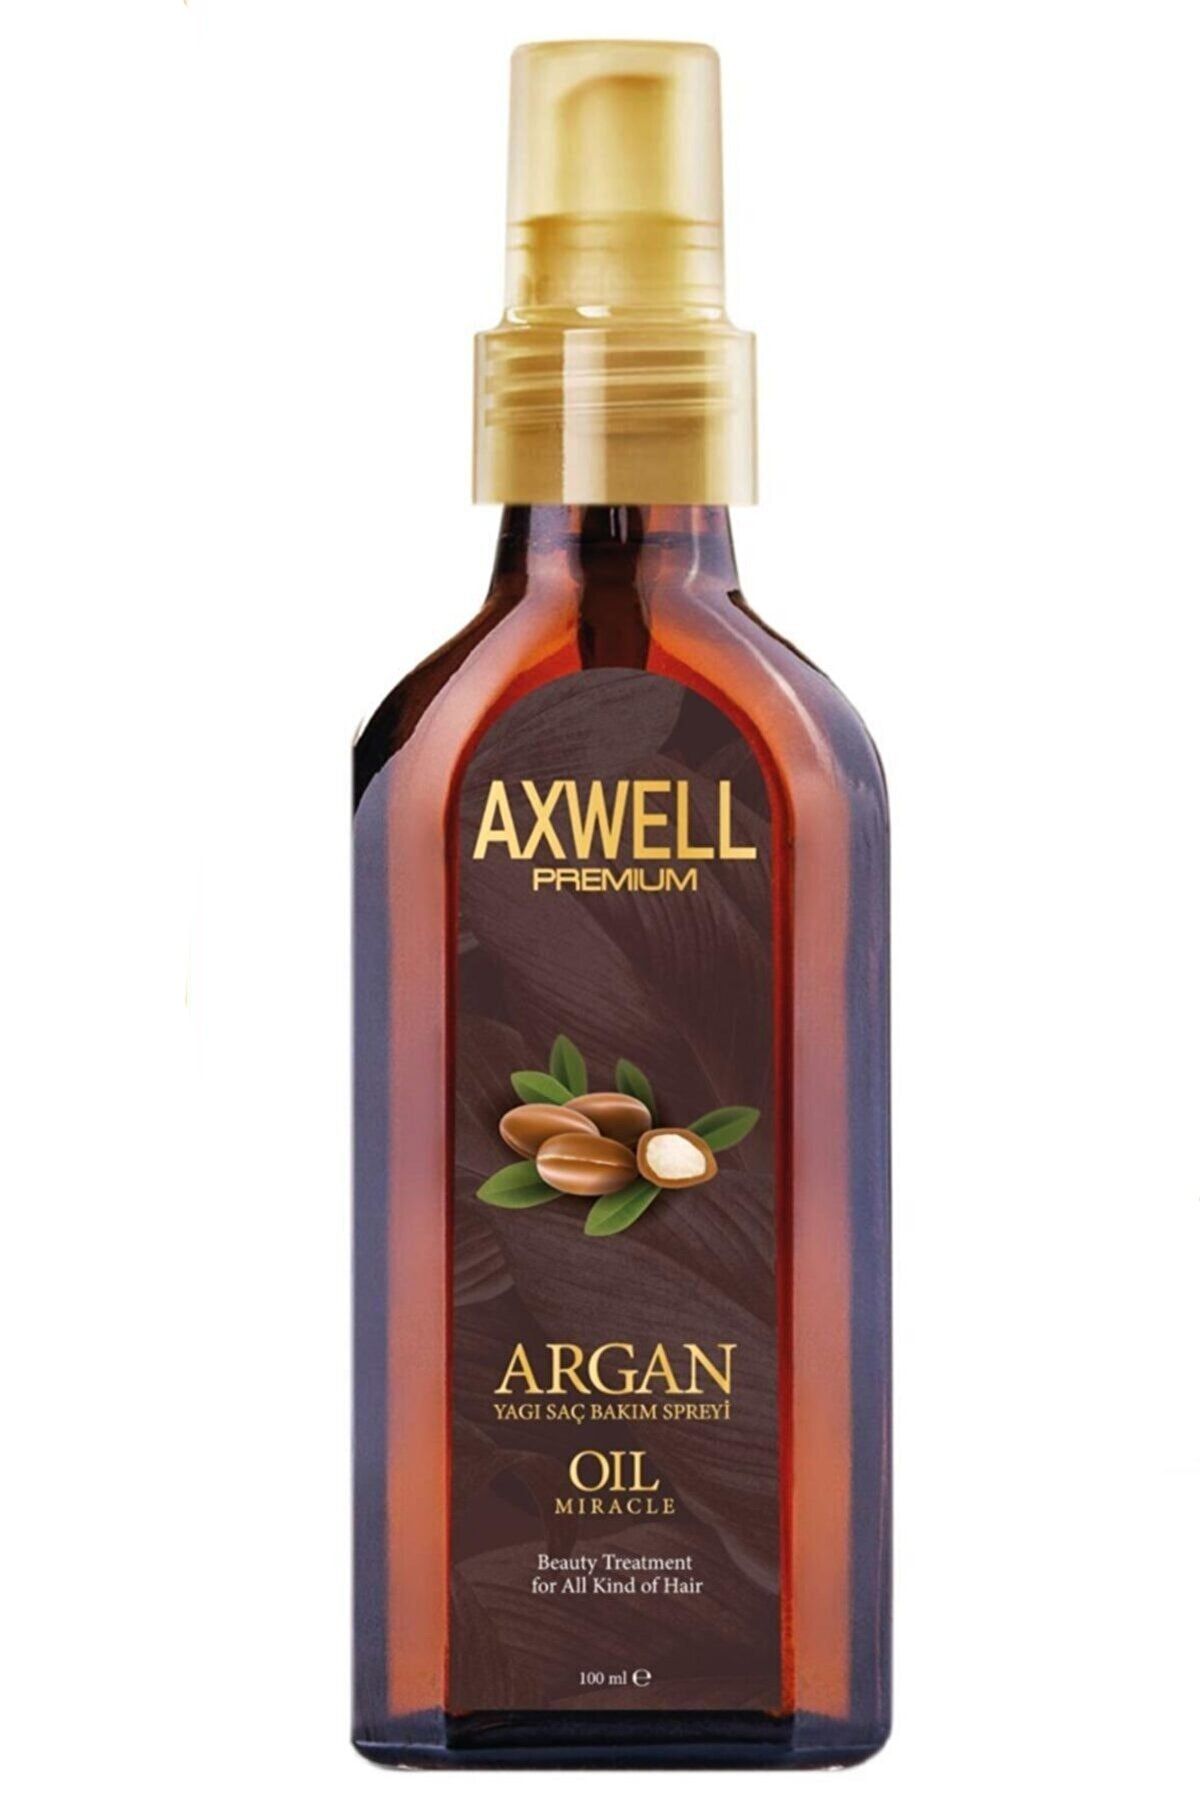 AXWELL Premium Argan Yağı Saç Bakım Spreyi - 100 Ml